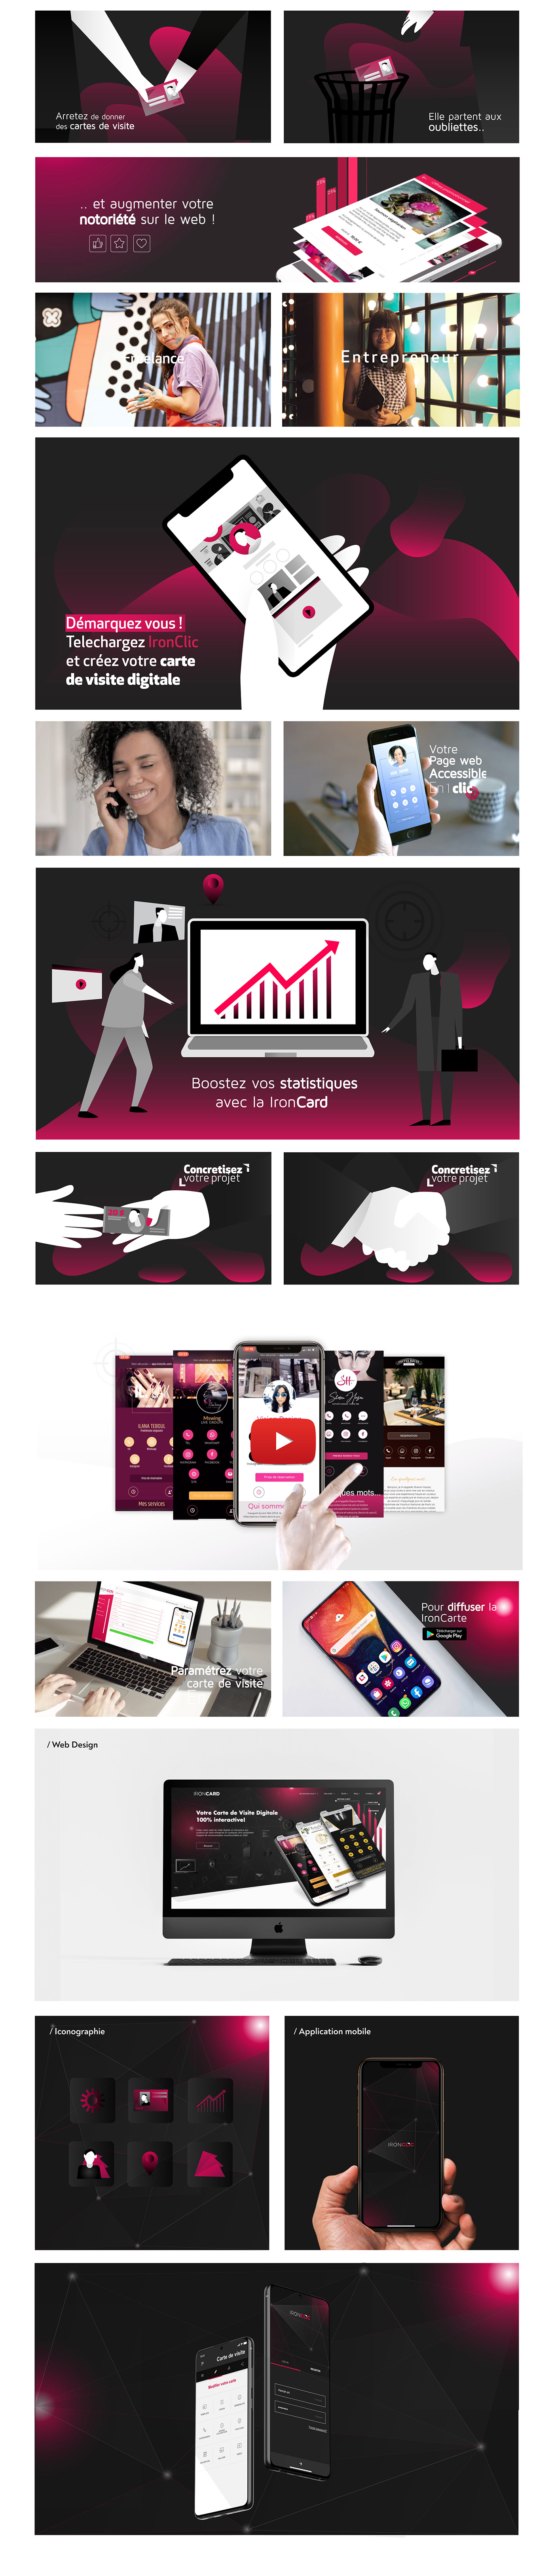 motion design video montage ILLUSTRATION  promo application Vidéo de présentation animation  entreprise identié visuelle